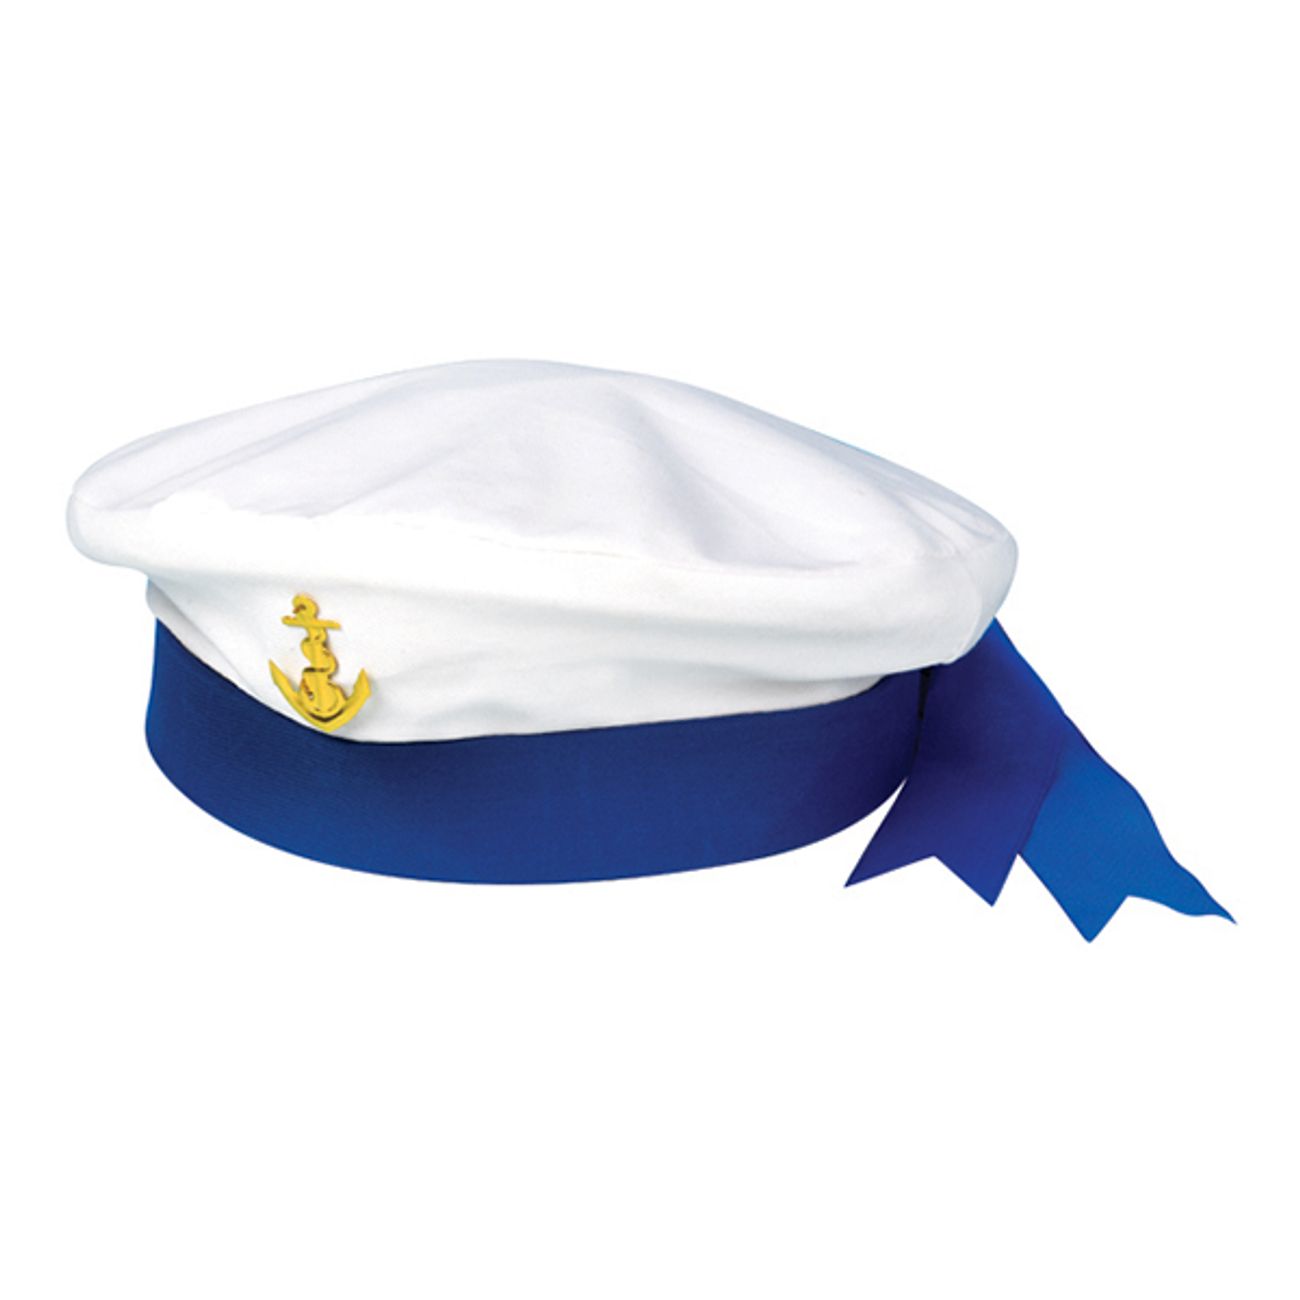 Купить морской берет. Шапка ВМФ Матросская. Sailor hat шляпа. Фуражка Матросская ВМФ. Головной убор Матросов Бескозырка.